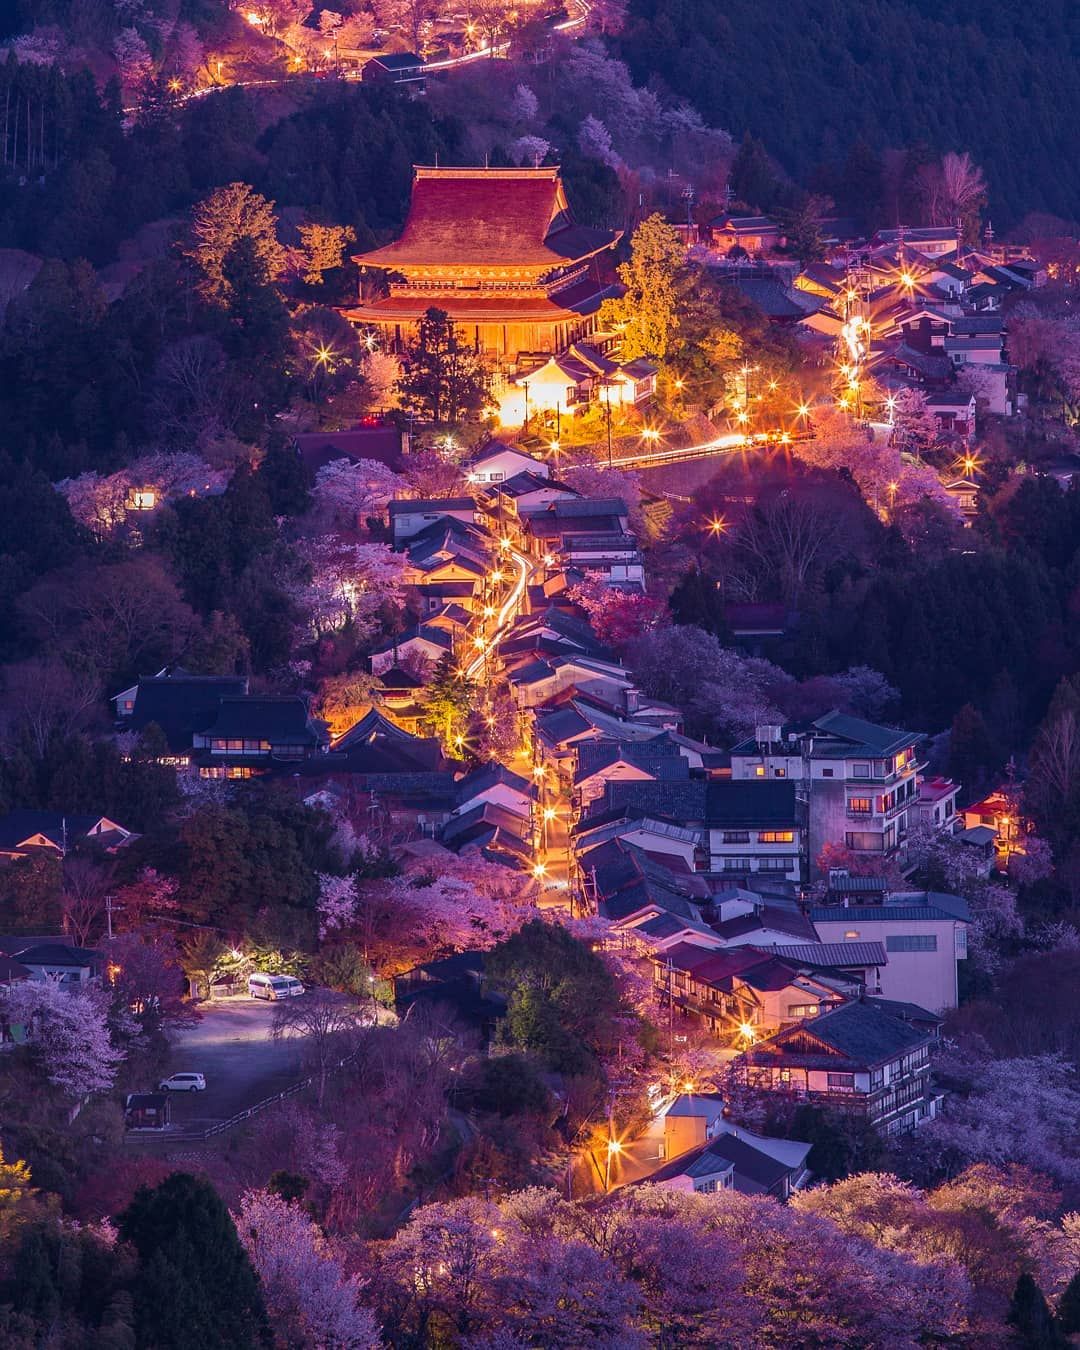 Dormir en el Monte Yoshino. Cerezos en flor iluminados (yozakura)